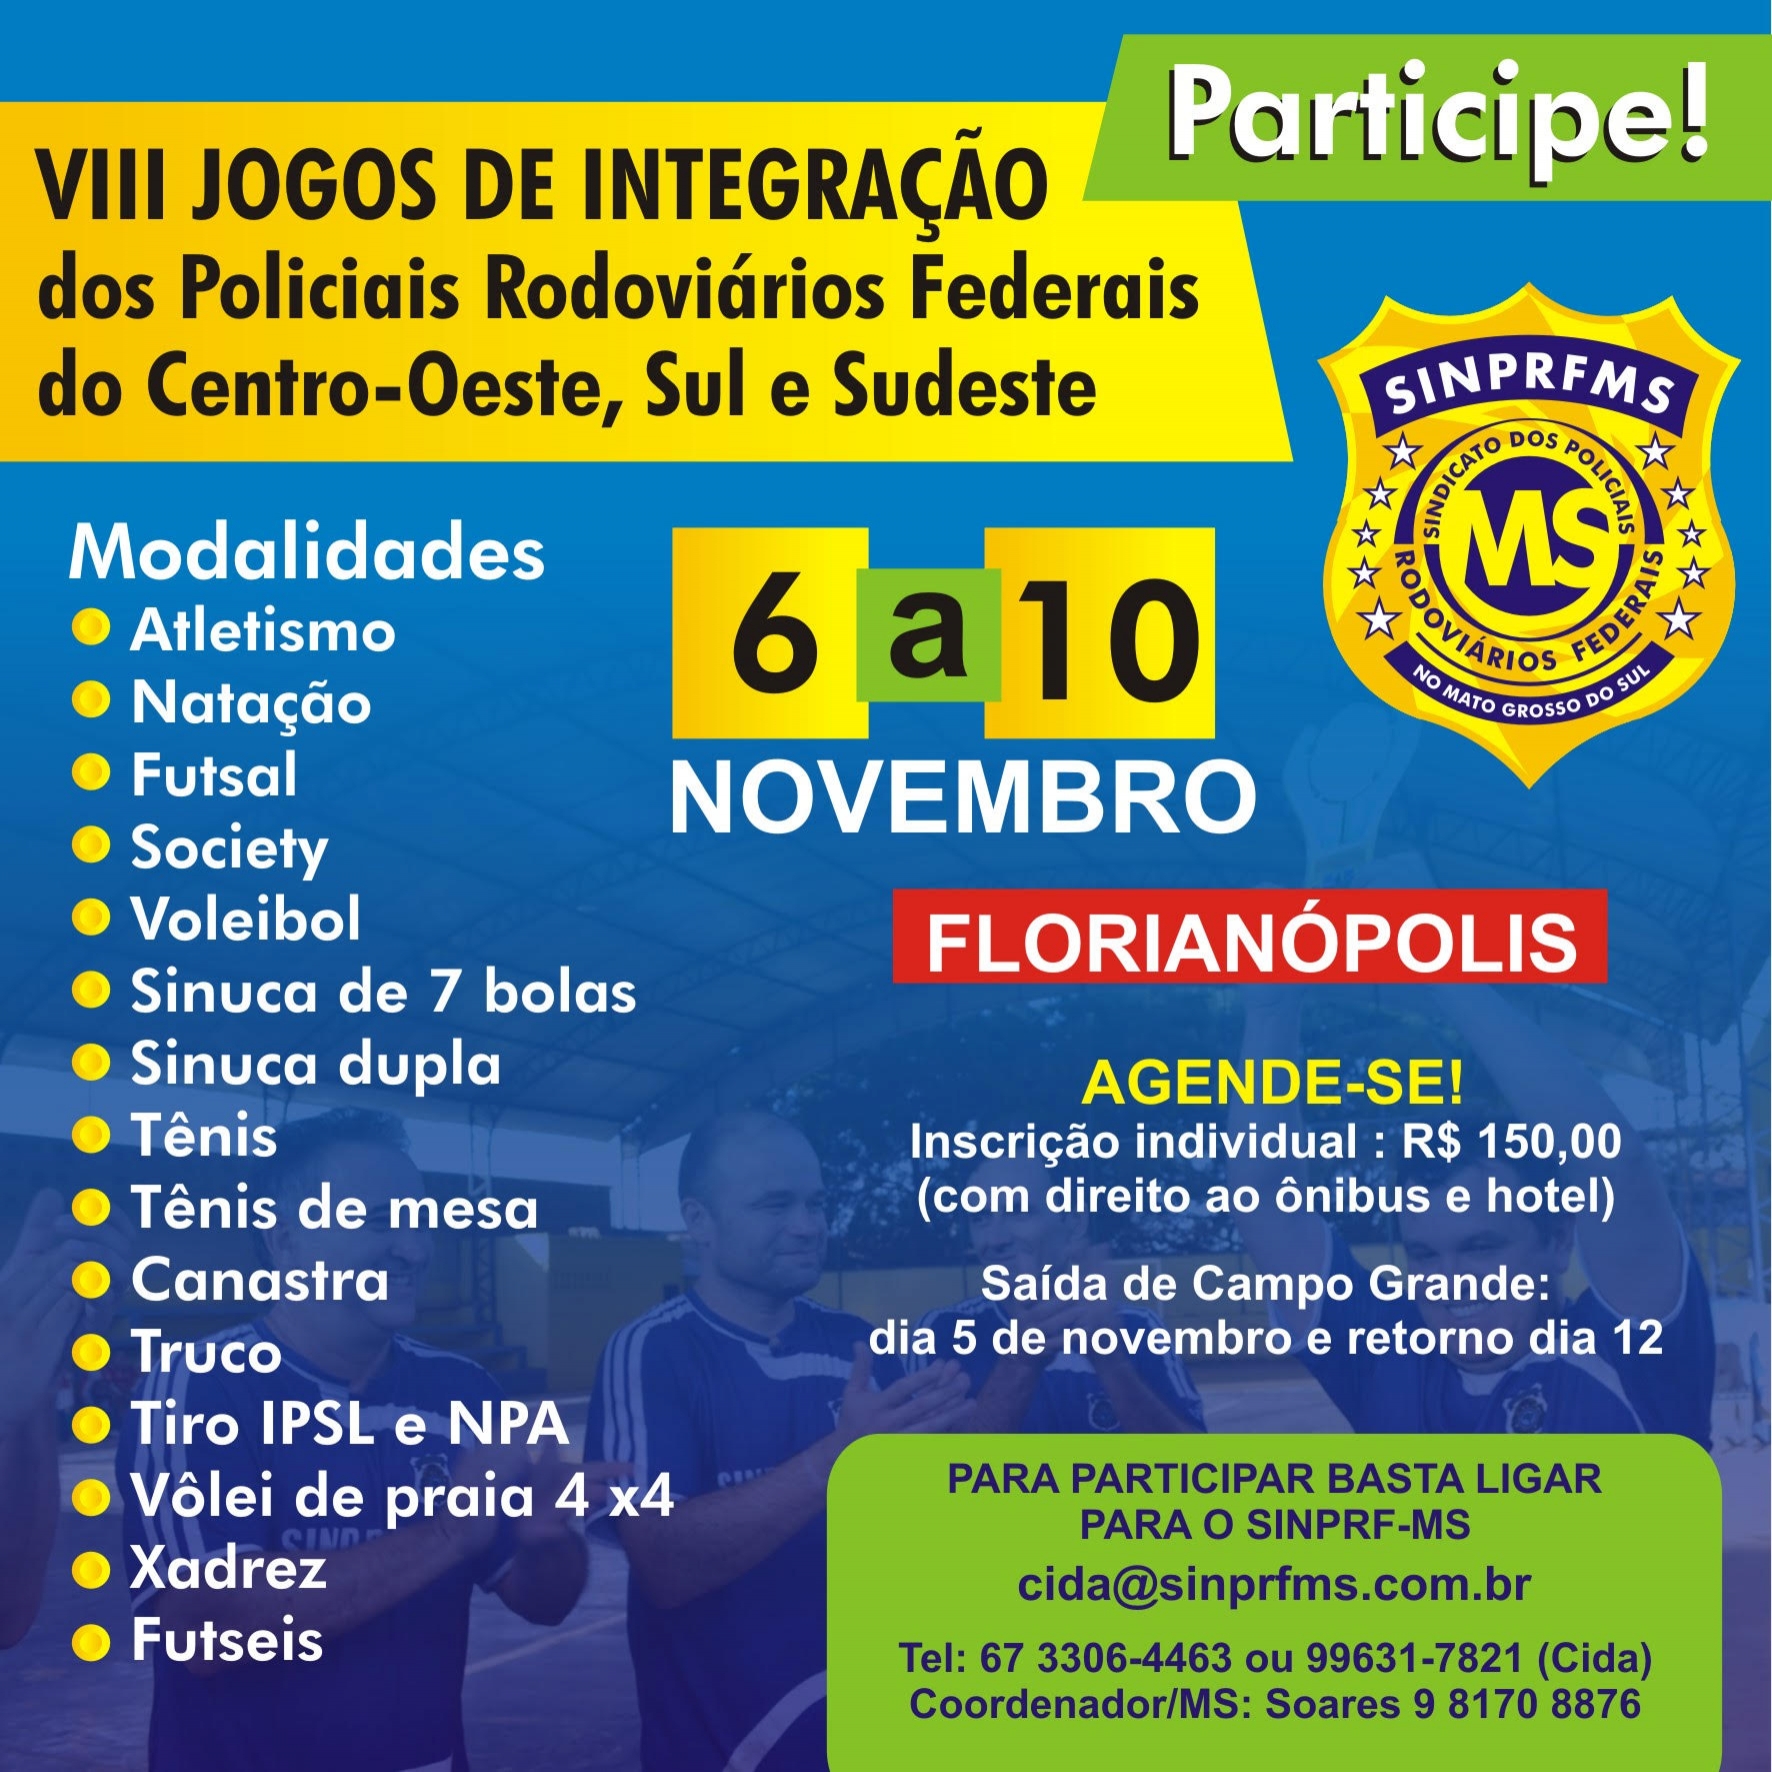 VIII Jogos de Integração dos Policiais Rodoviários federais acontece em Florianópolis